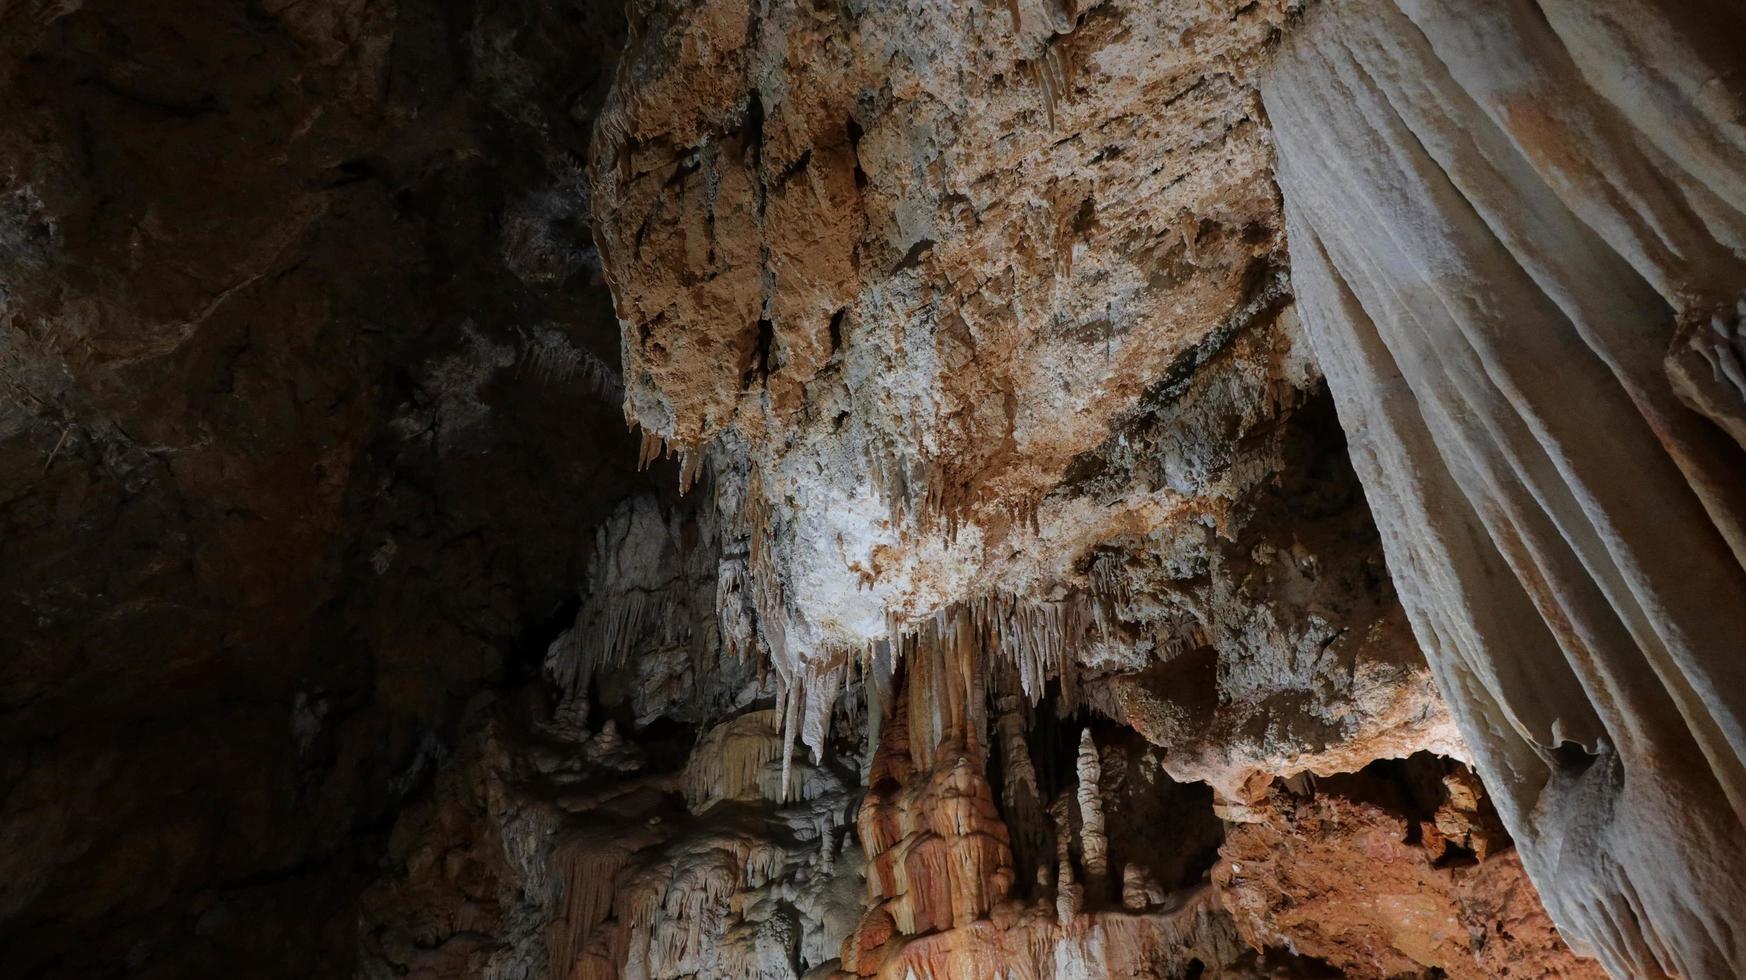 le grotte di borgio verezzi con le sue stalattiti e stalagmiti e la sua storia millenaria nel cuore della liguria occidentale in provincia di savona foto